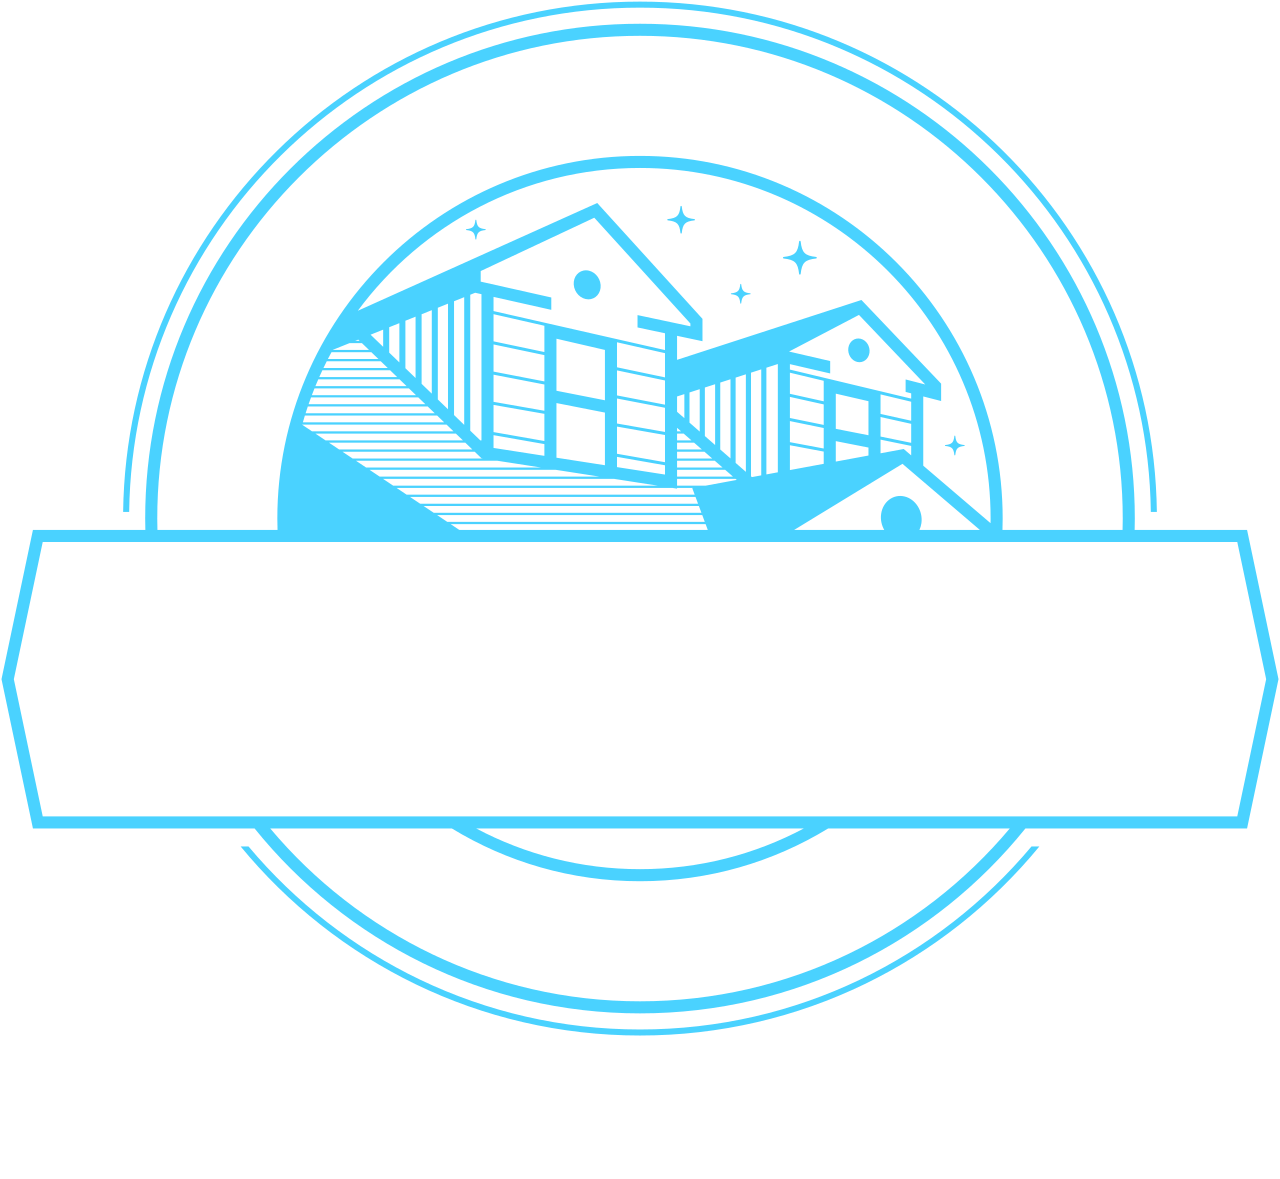 C&G ROOFING LLC's logo